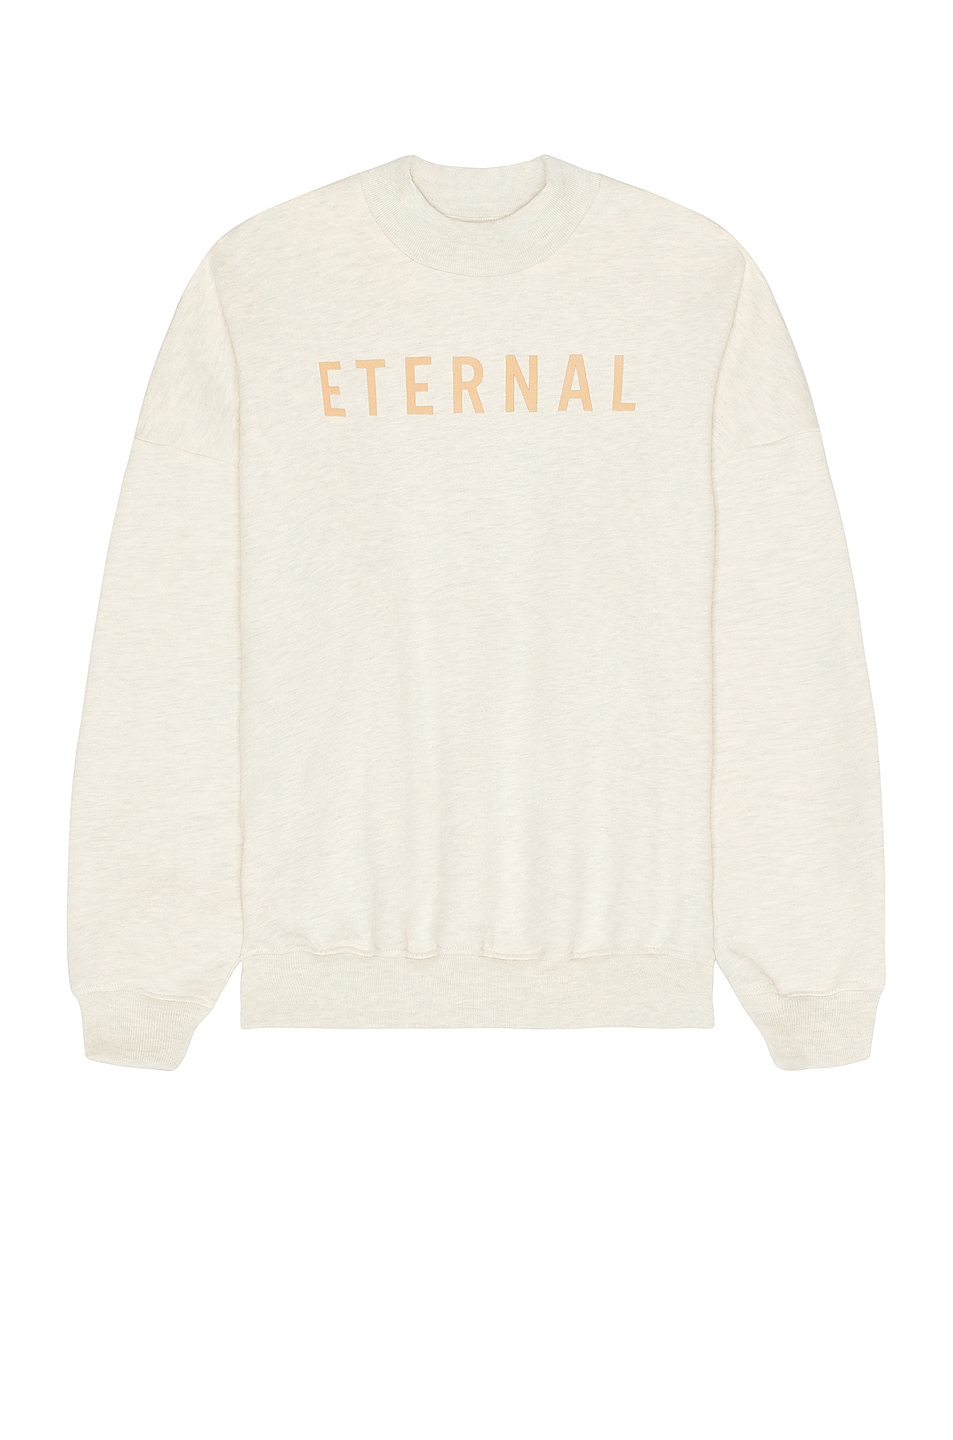 Image 1 of Fear of God Eternal Sweater in warm heather oatmeal